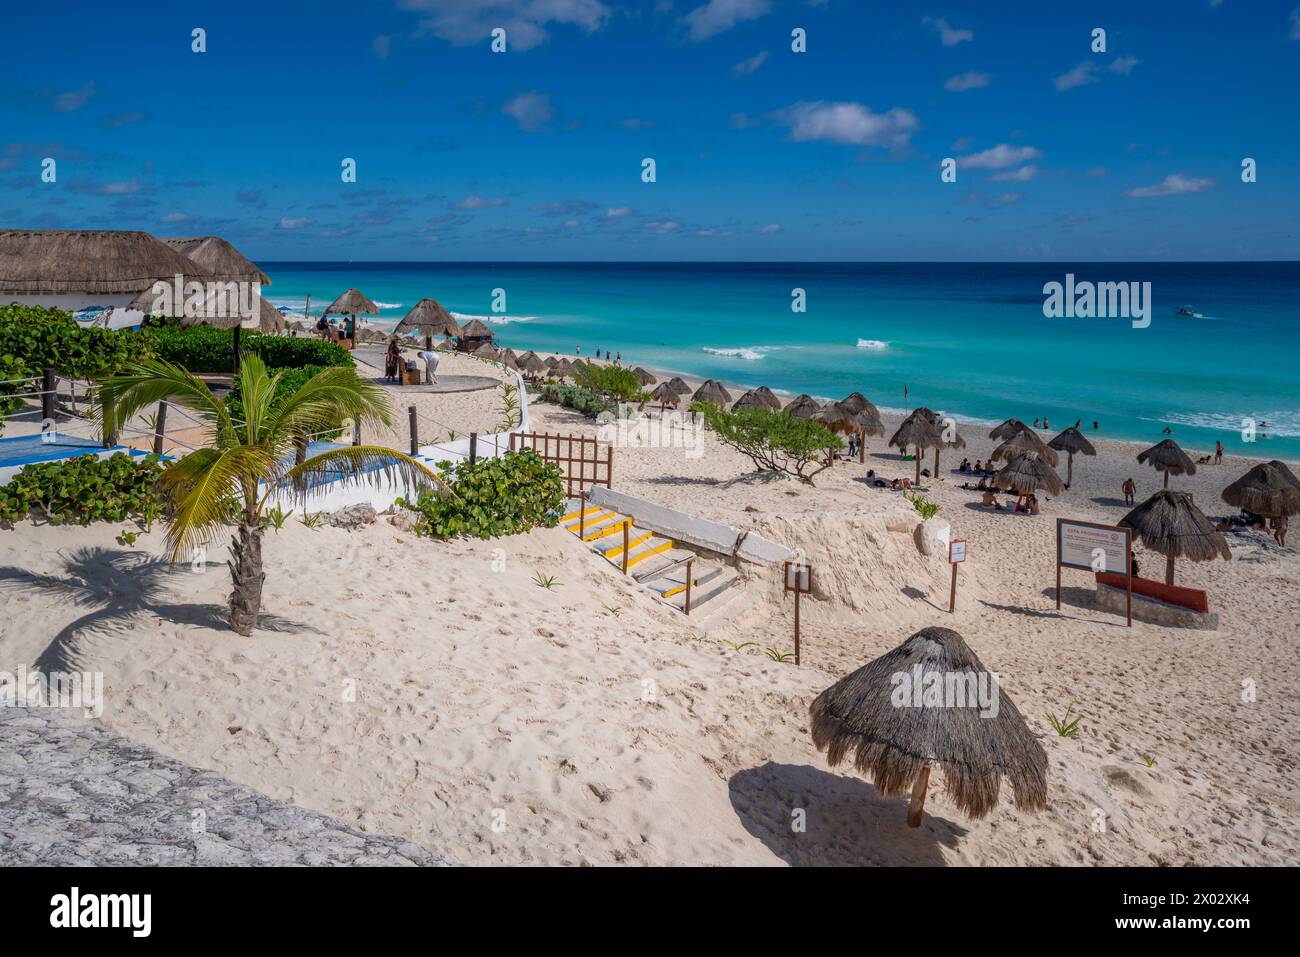 Vista della lunga spiaggia di sabbia bianca a Playa Delfines, zona degli hotel, Cancun, costa caraibica, penisola dello Yucatan, Messico, Nord America Foto Stock